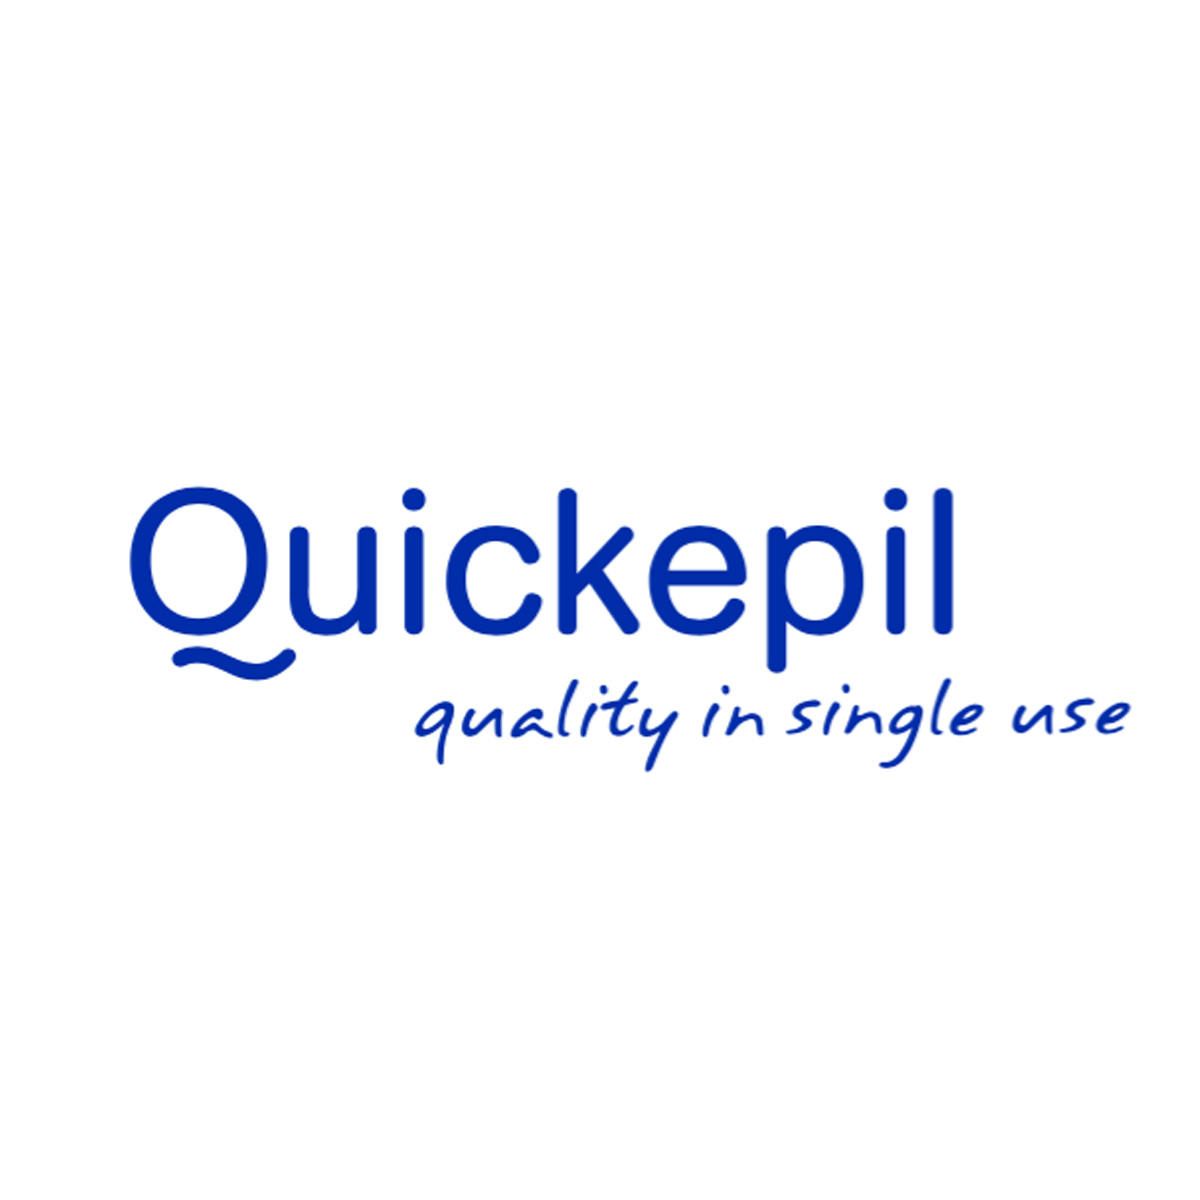 Quickepil